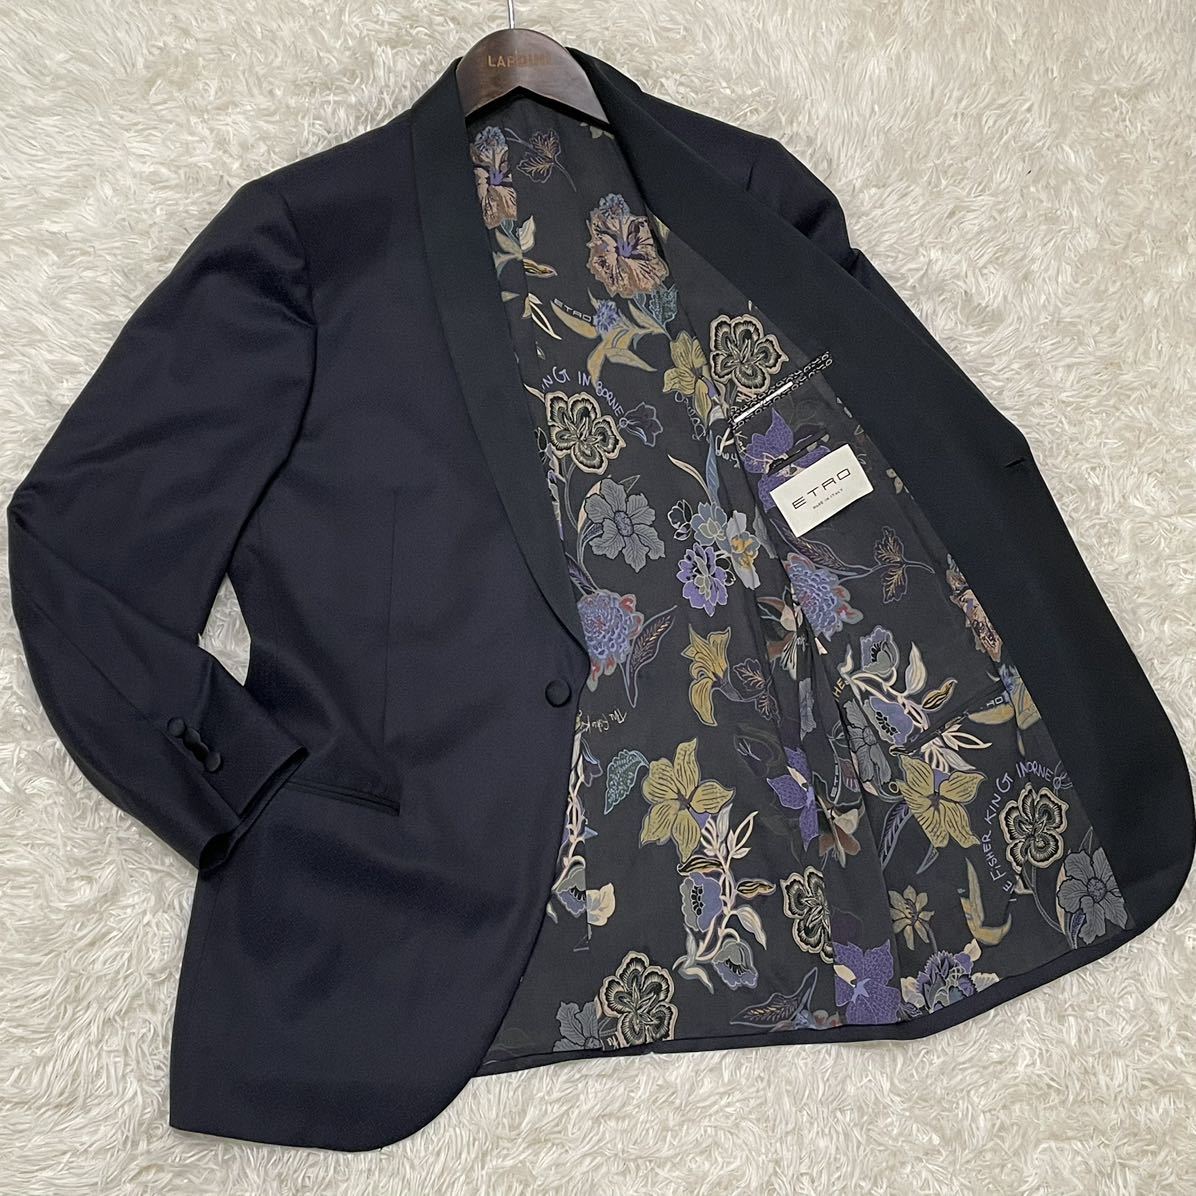 高級 ETRO エトロ テーラードジャケット teddyboy jacket テディーボーイジャケット ネイビー 紺 花柄 ラペル 黒 シルク ウール 52 XL